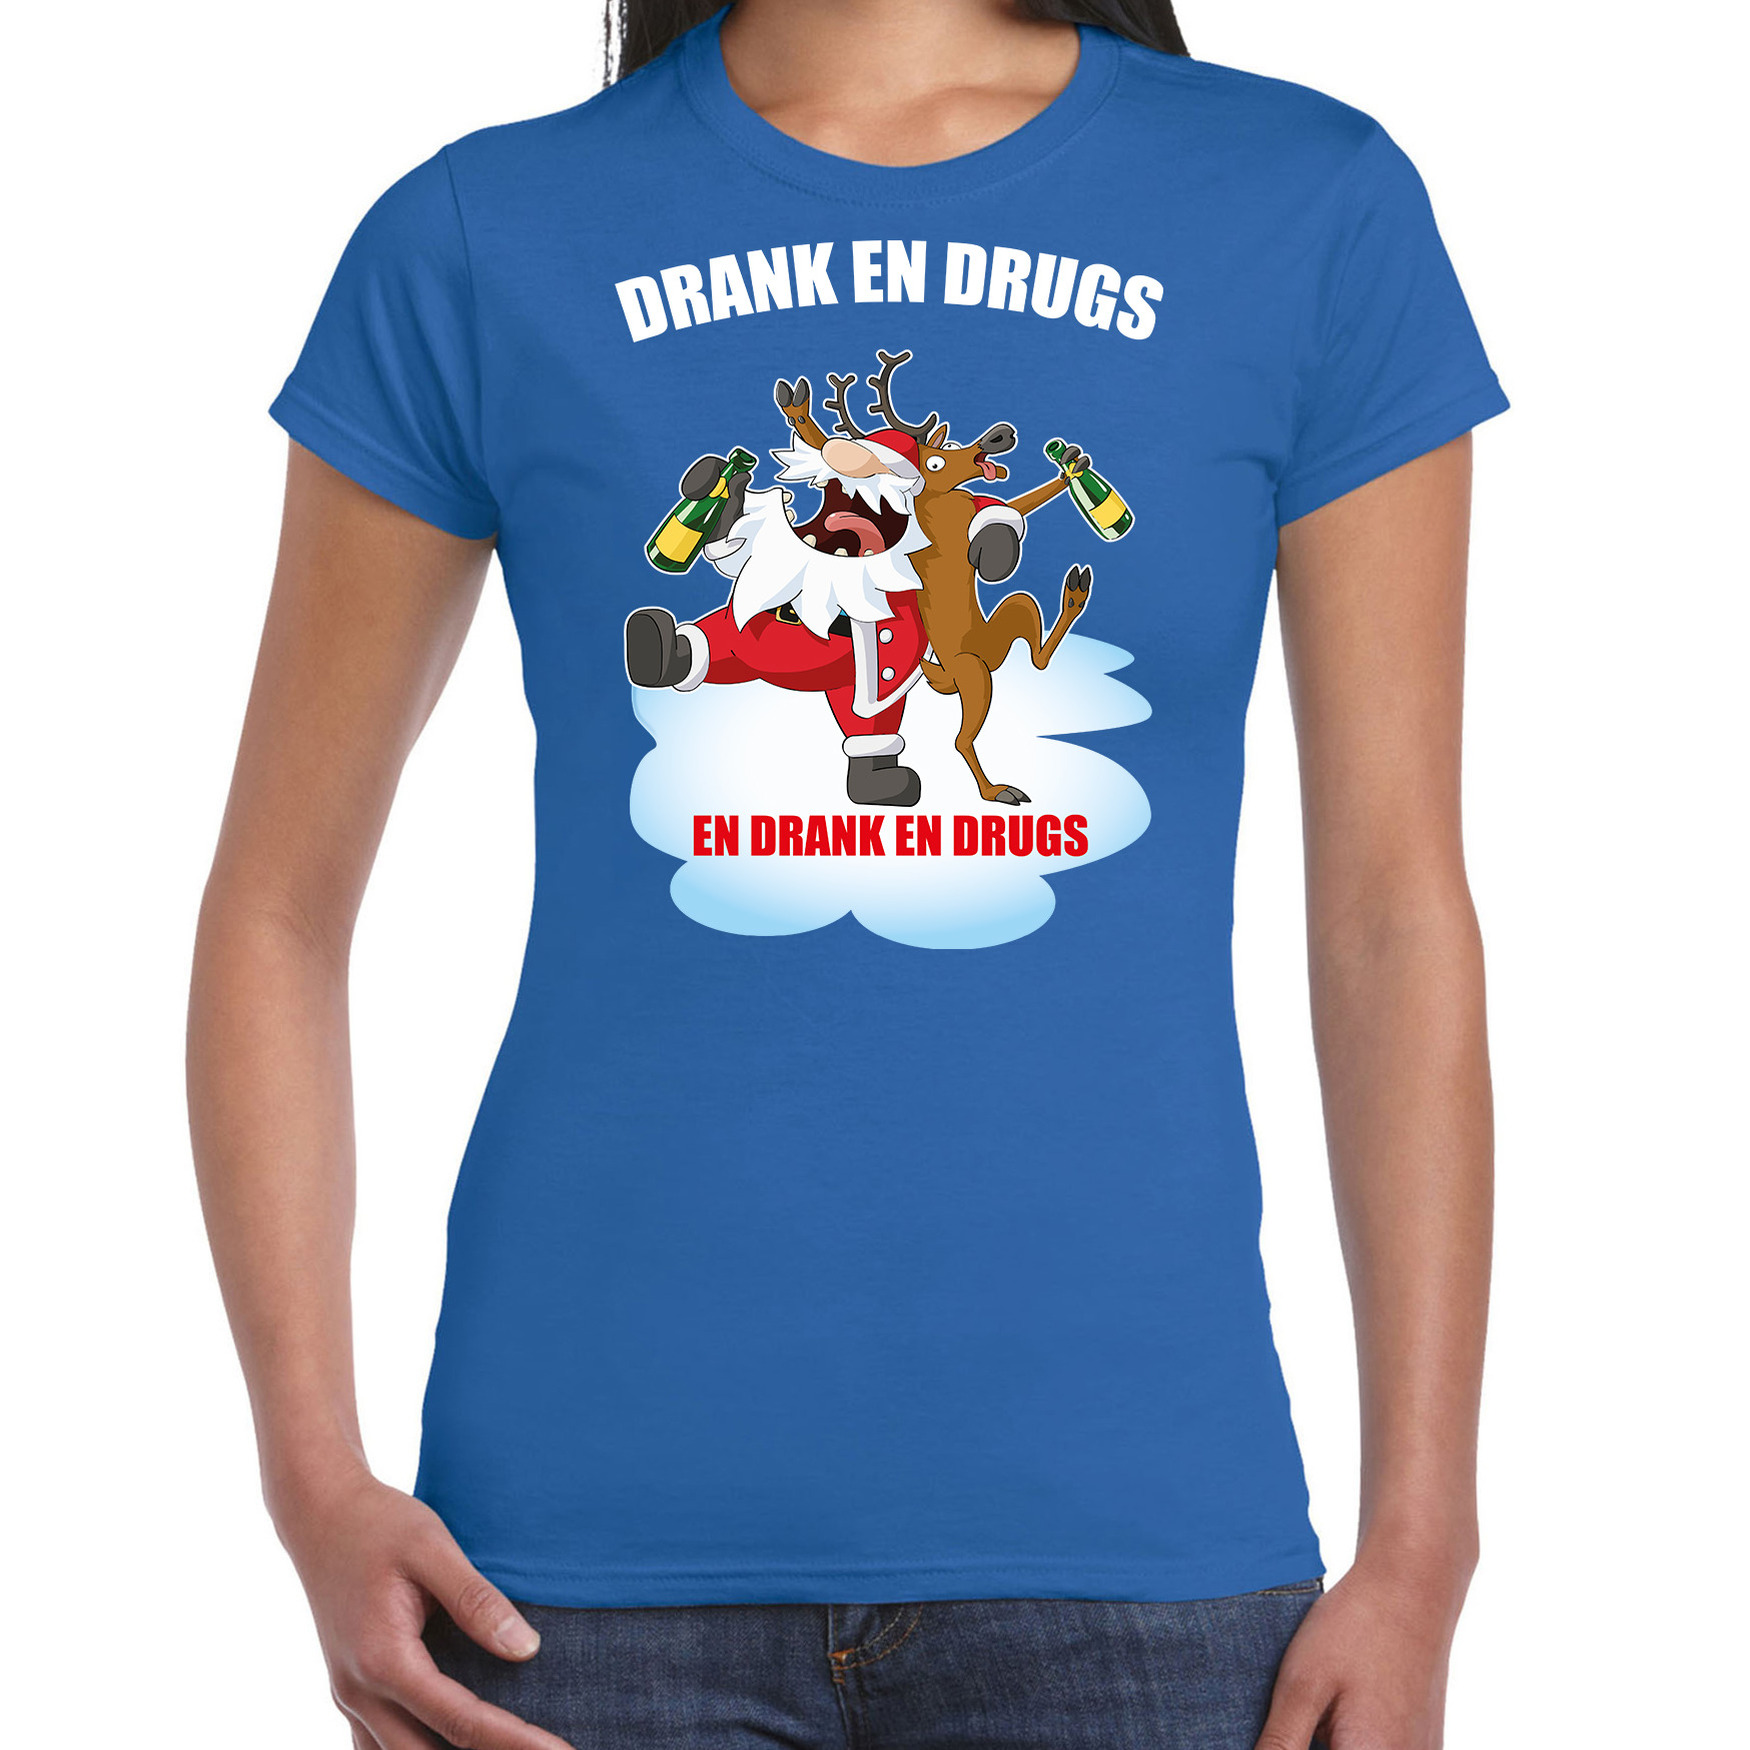 Blauw Kerstshirt-Kerstkleding Drank en drugs voor dames